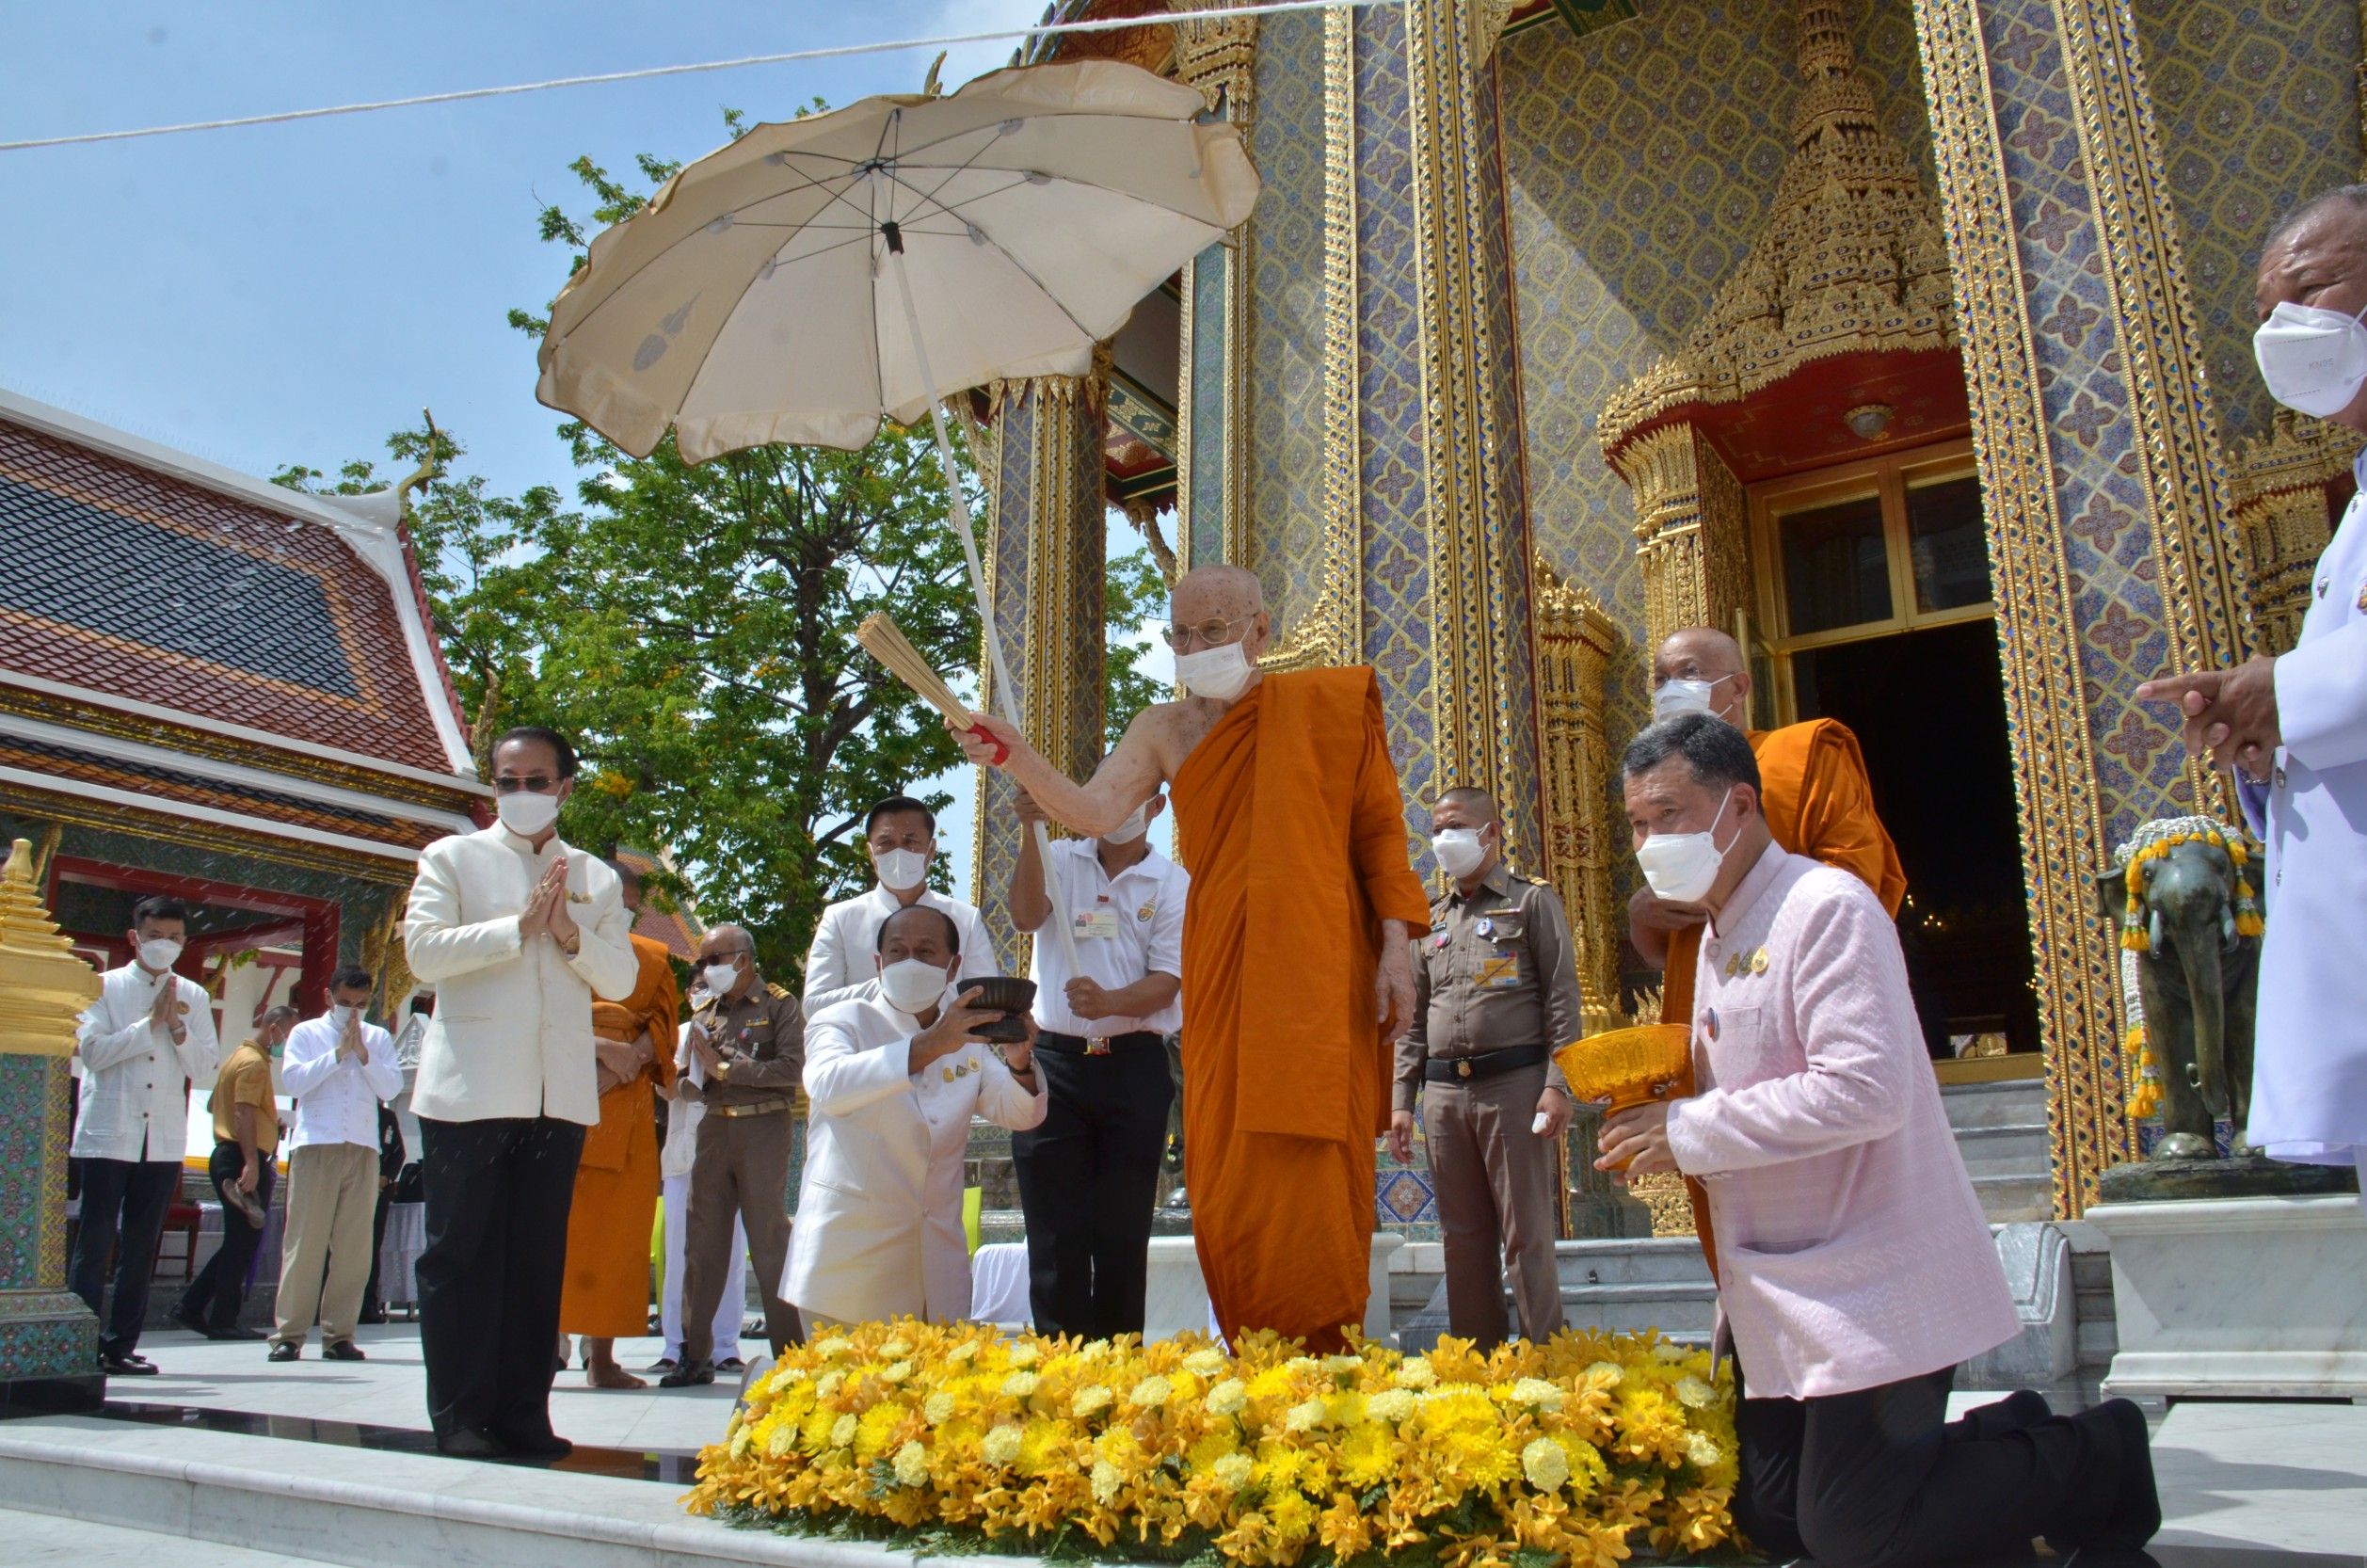 “สมเด็จพระสังฆราช” เสด็จเป็นองค์ประธานสงฆ์เททองหล่อพระเกศ “พระพุทธมุนีศรีประชานาถ” พระพุทธรูปประจำกระทรวงมหาดไทย